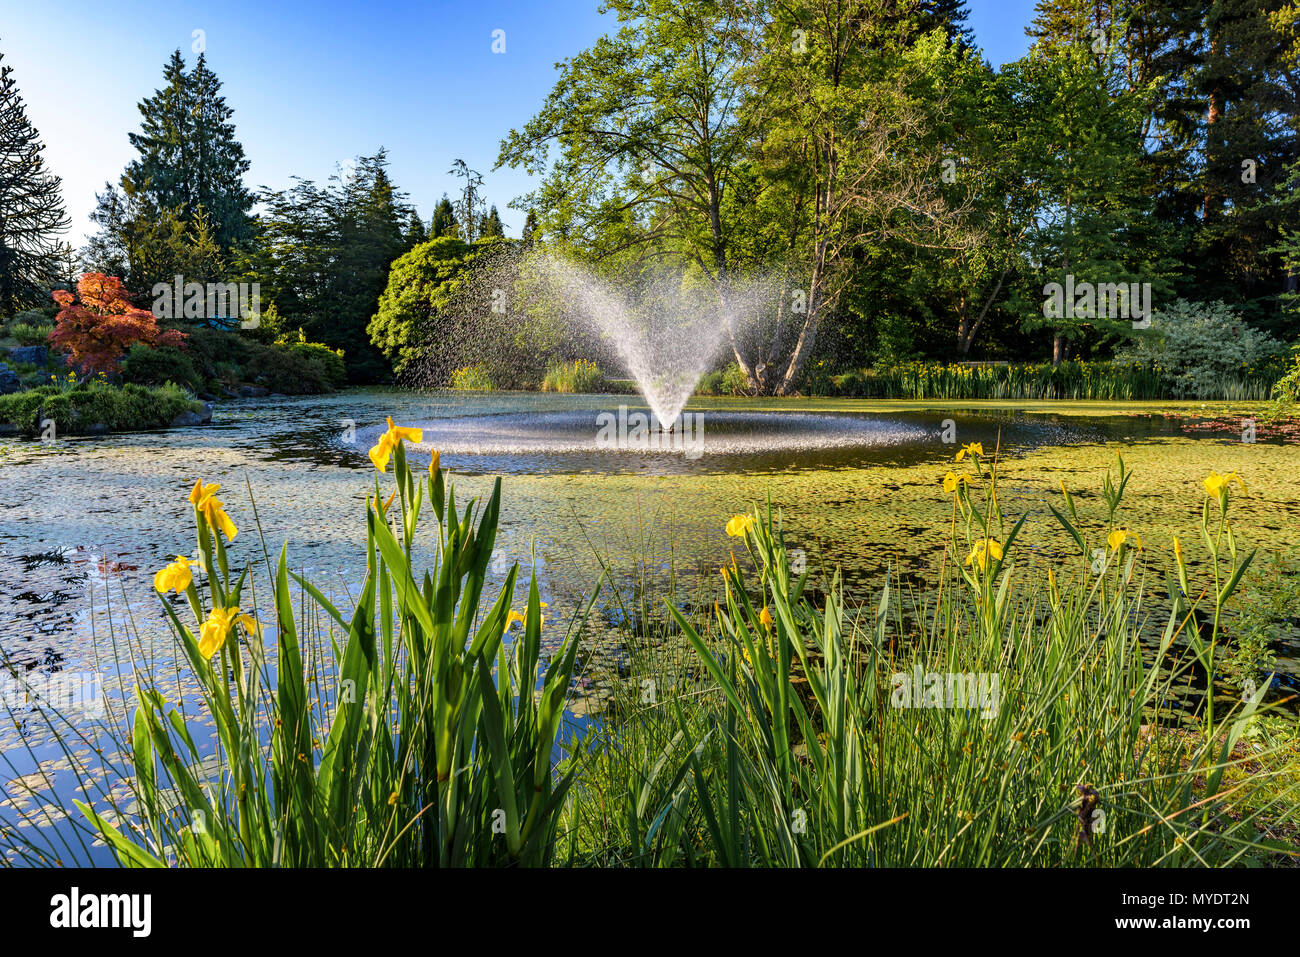 Bassin avec jet d'eau, Jardin botanique VanDusen, Vancouver, Colombie-Britannique, Canada. Banque D'Images